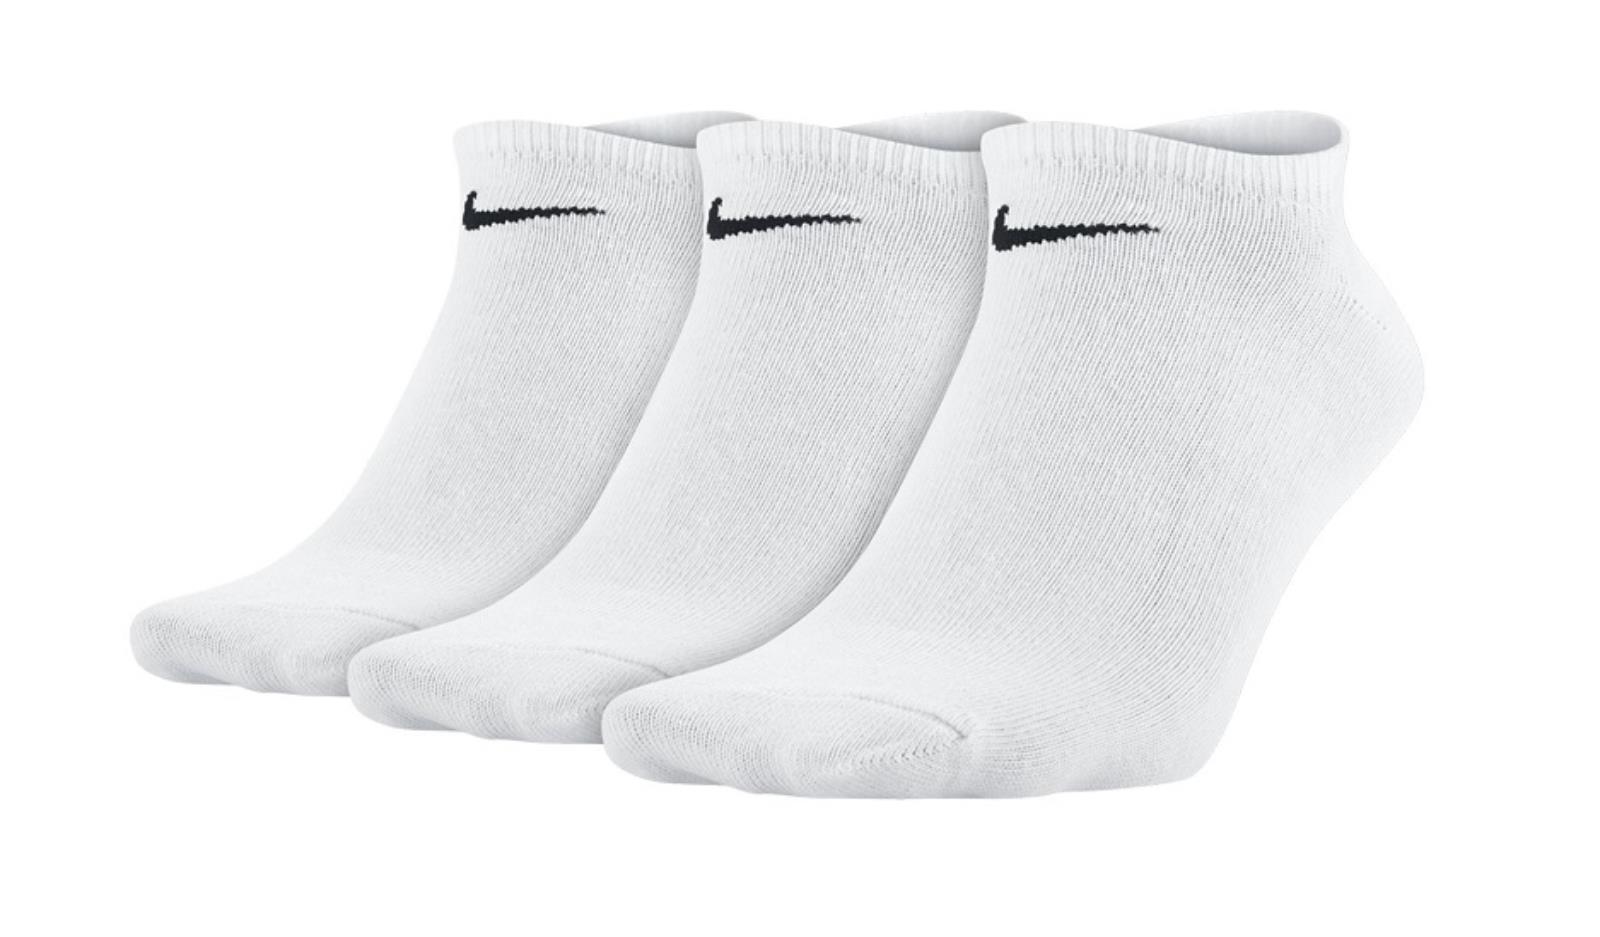 Носки найк короткие. Носки sx6263n06-100. Спортивные носки Nike. Носки Nike Elite Cushioned qtr sx4850-710 sx4850-710. Носки Nike 3 пары белые at-017.